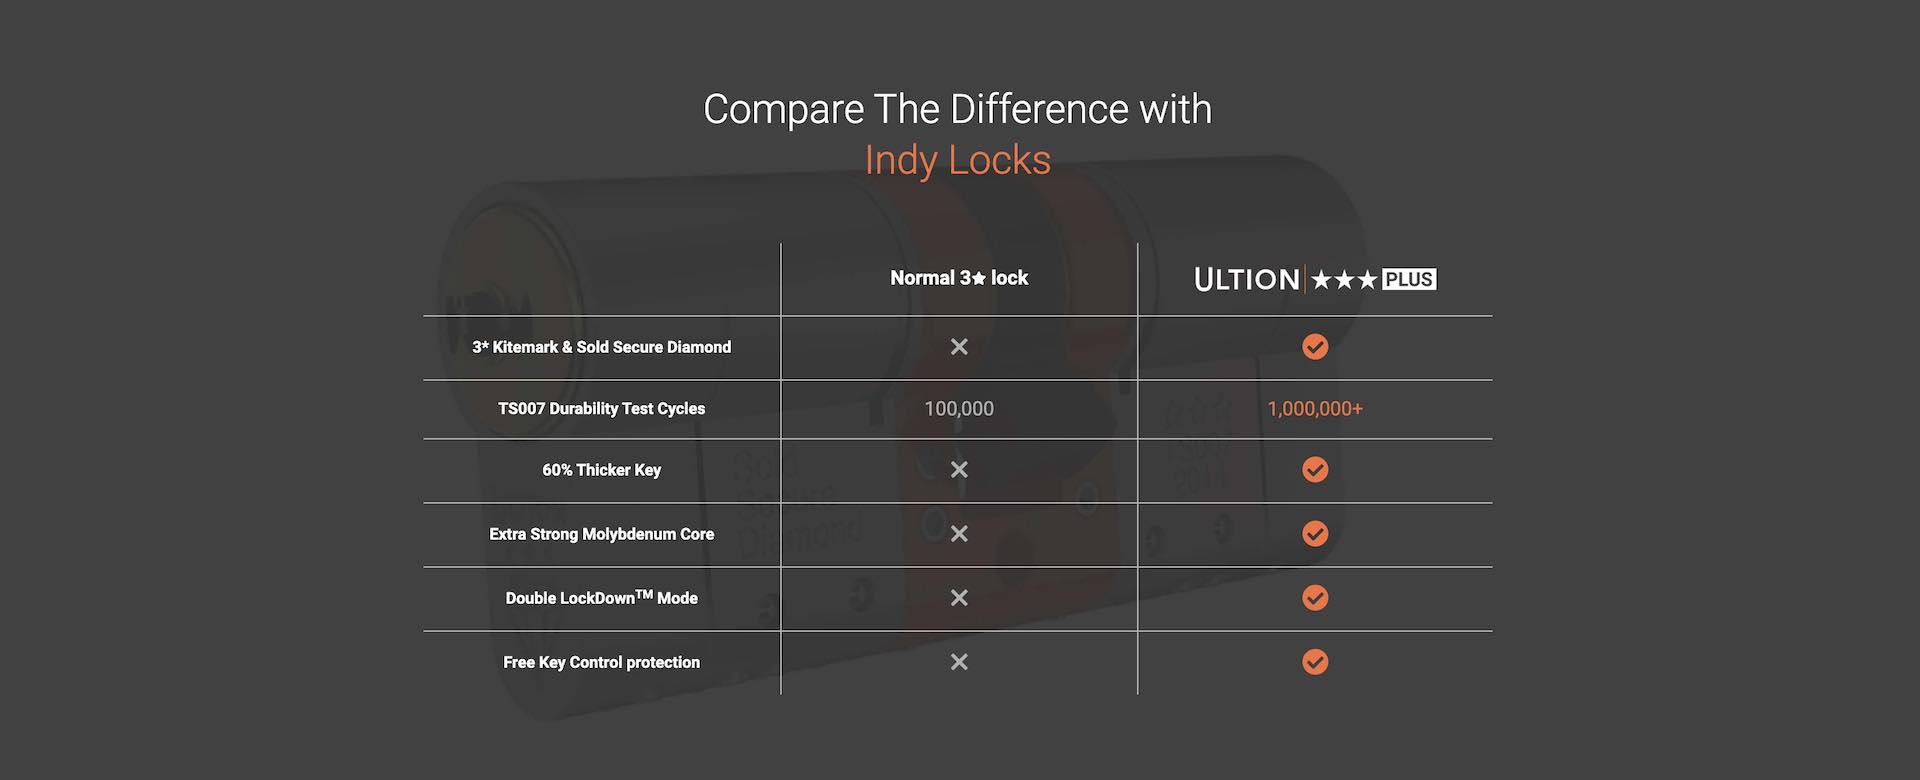 Ultion Key Indy Locks Llanelli Locksmith, Compare the difference with Llanelli Locksmith Indy Locks